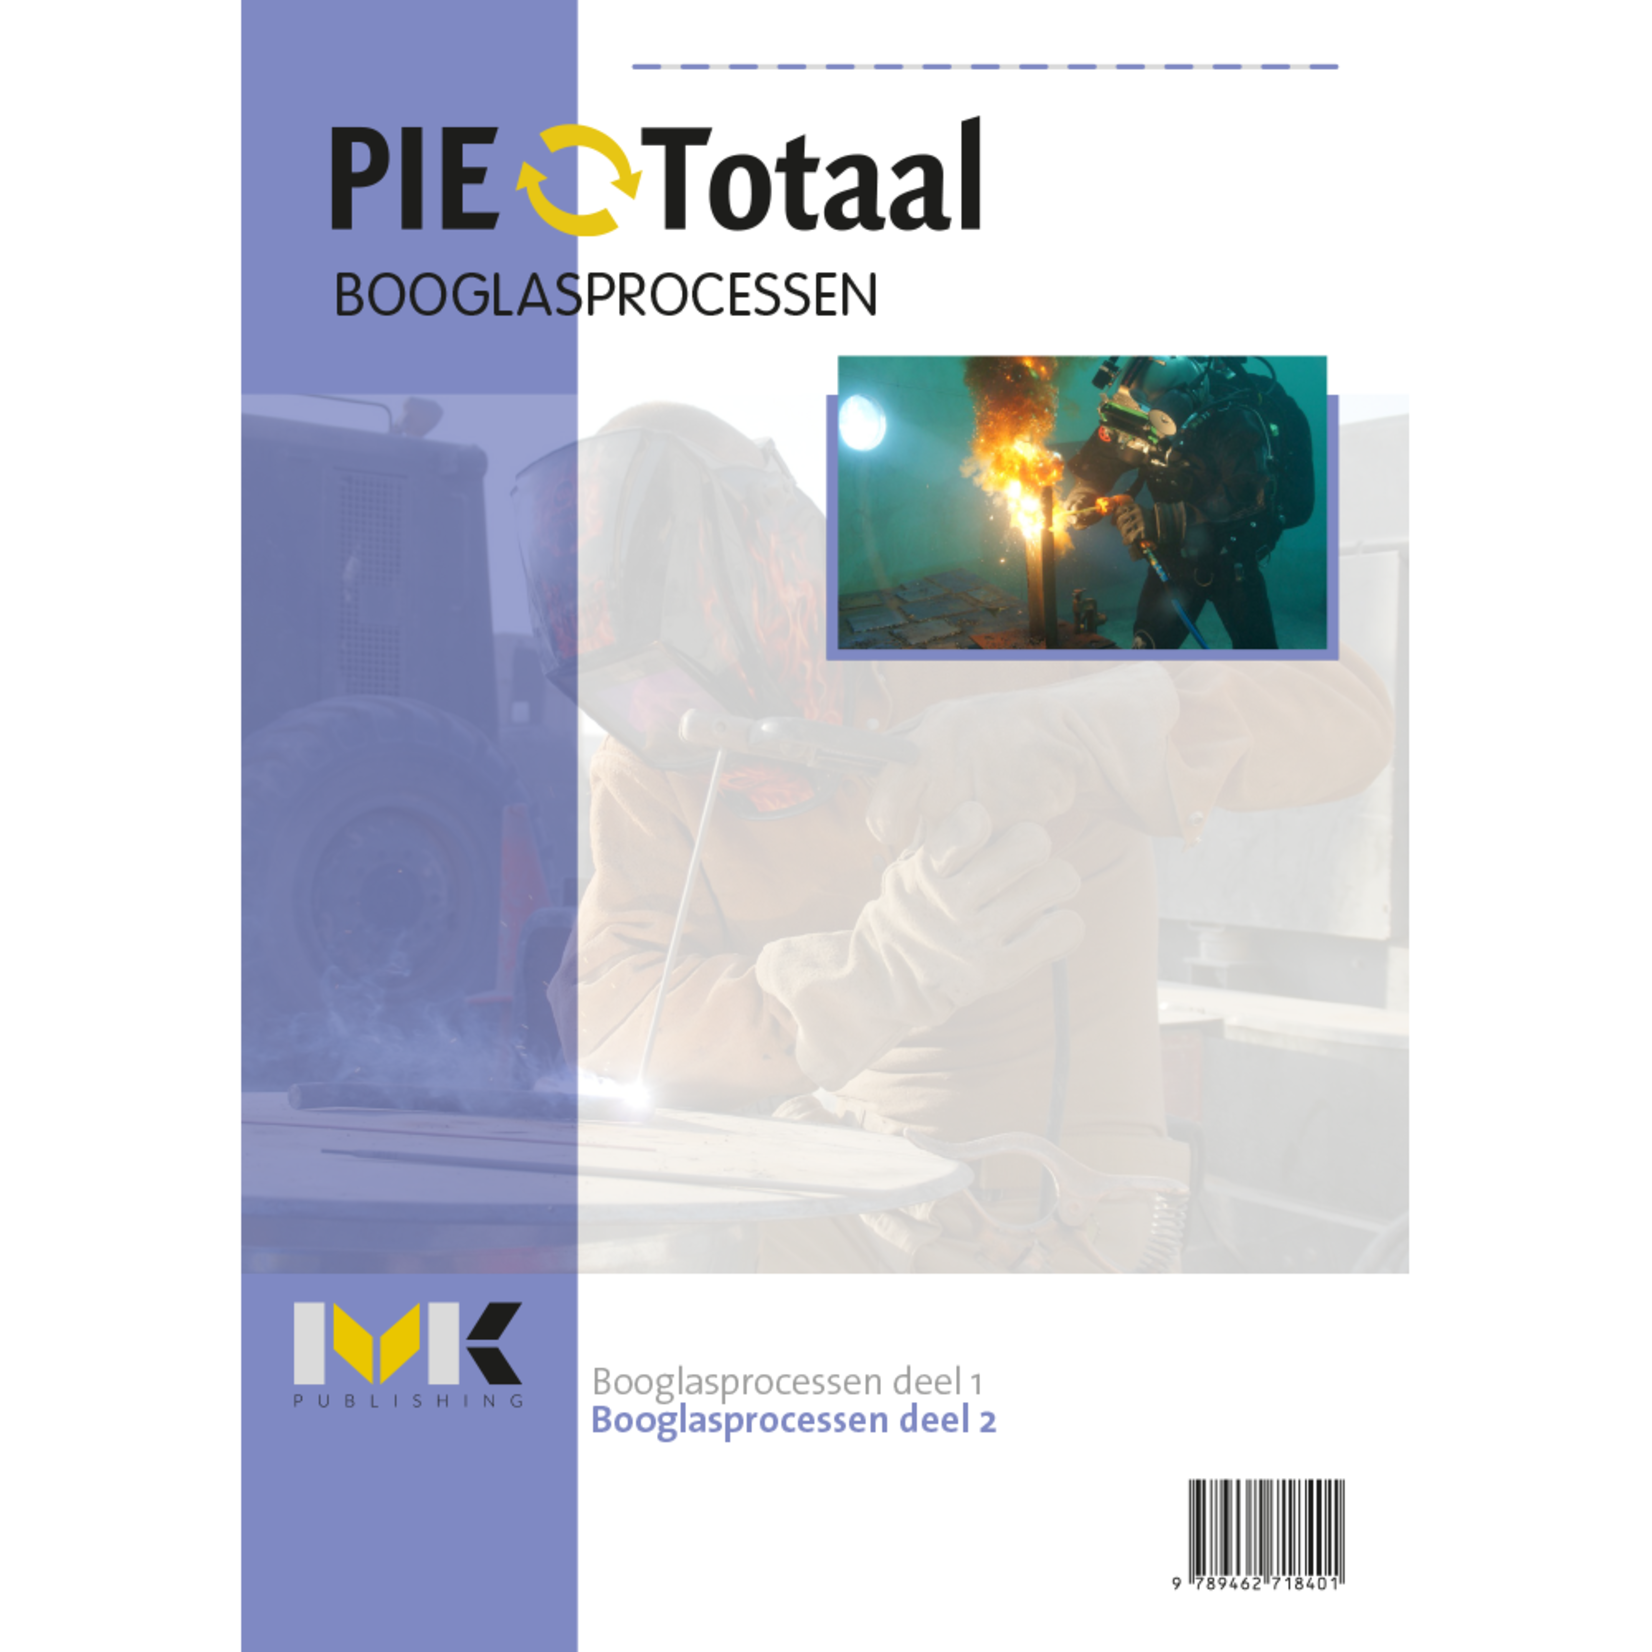 PIE-Totaal Booglasprocessen (1326)